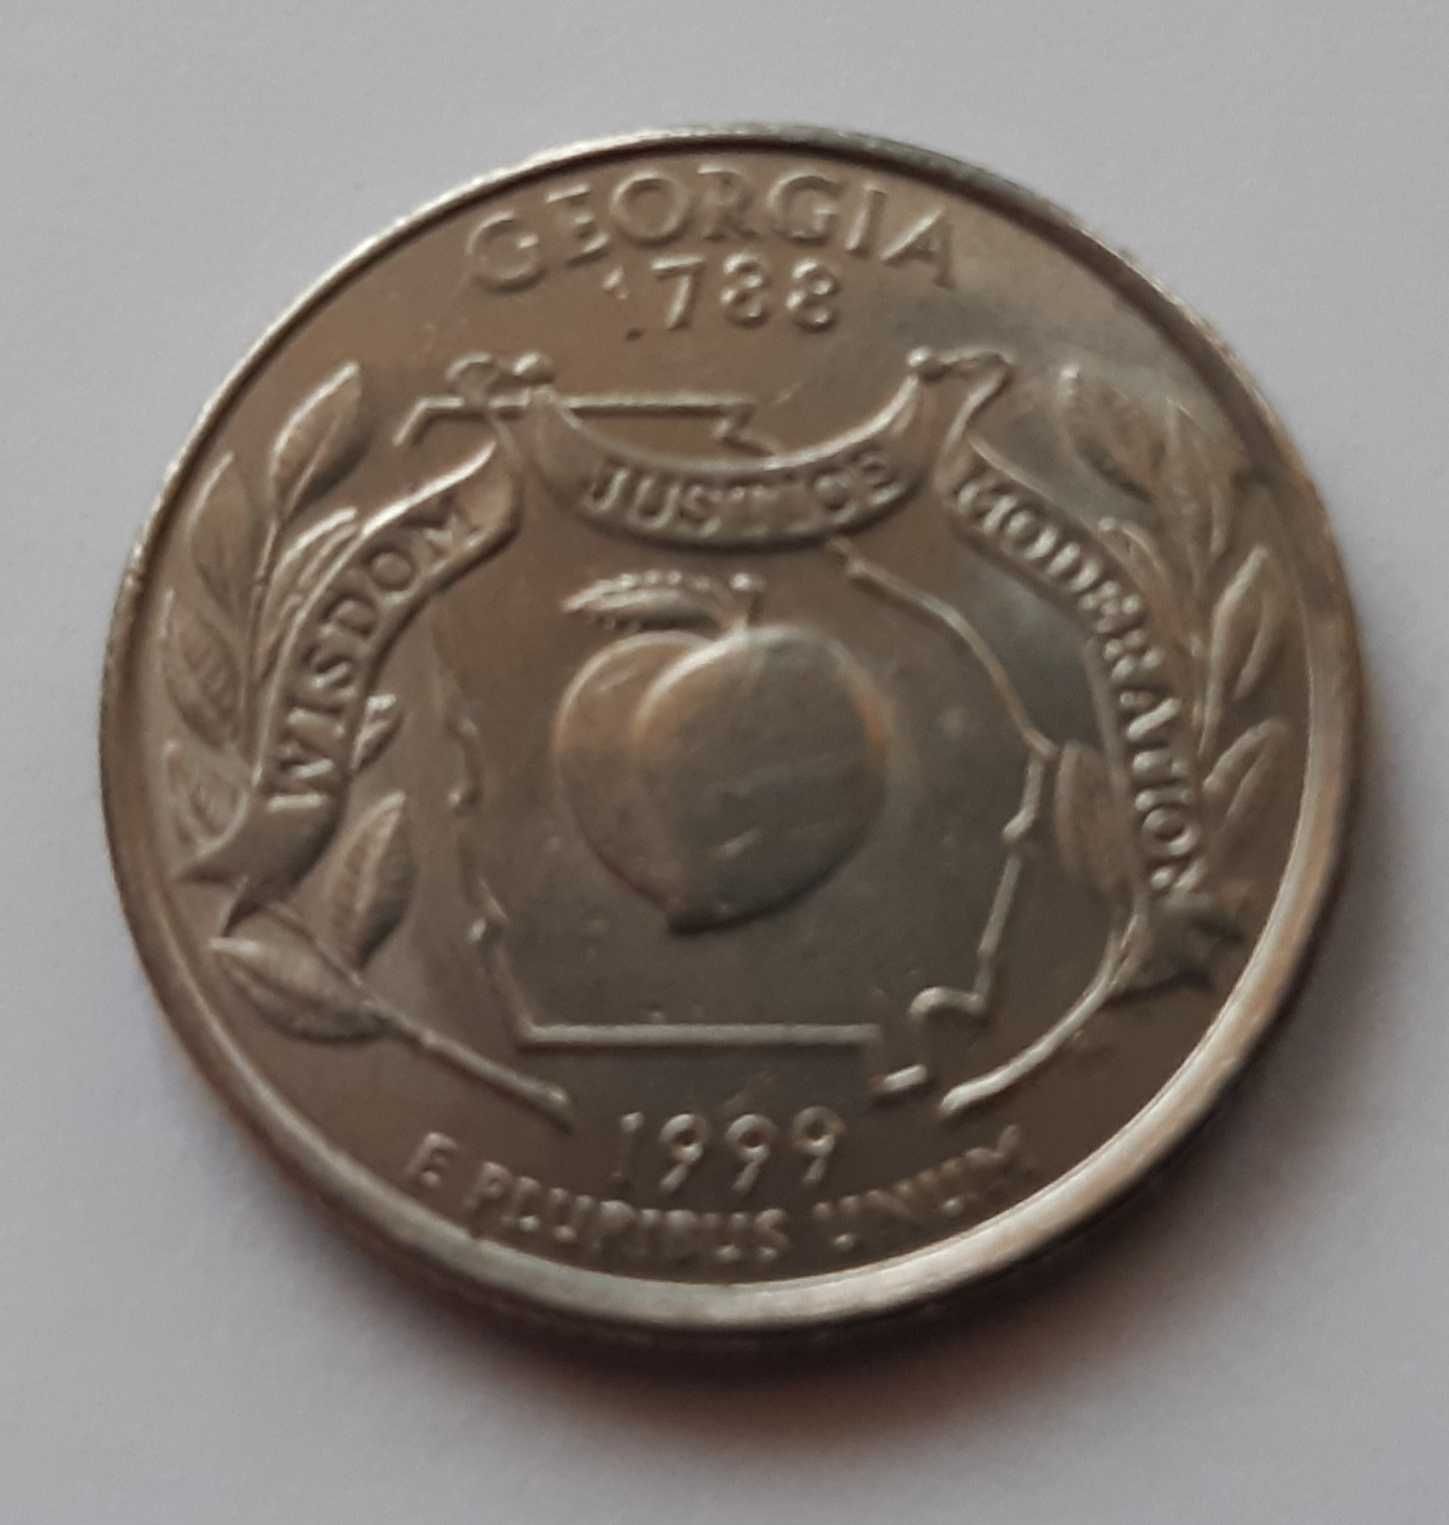 Moneta USA QUARTER DOLLAR 1999 P - STAN GEORGIA - 25 centów - Piękna!